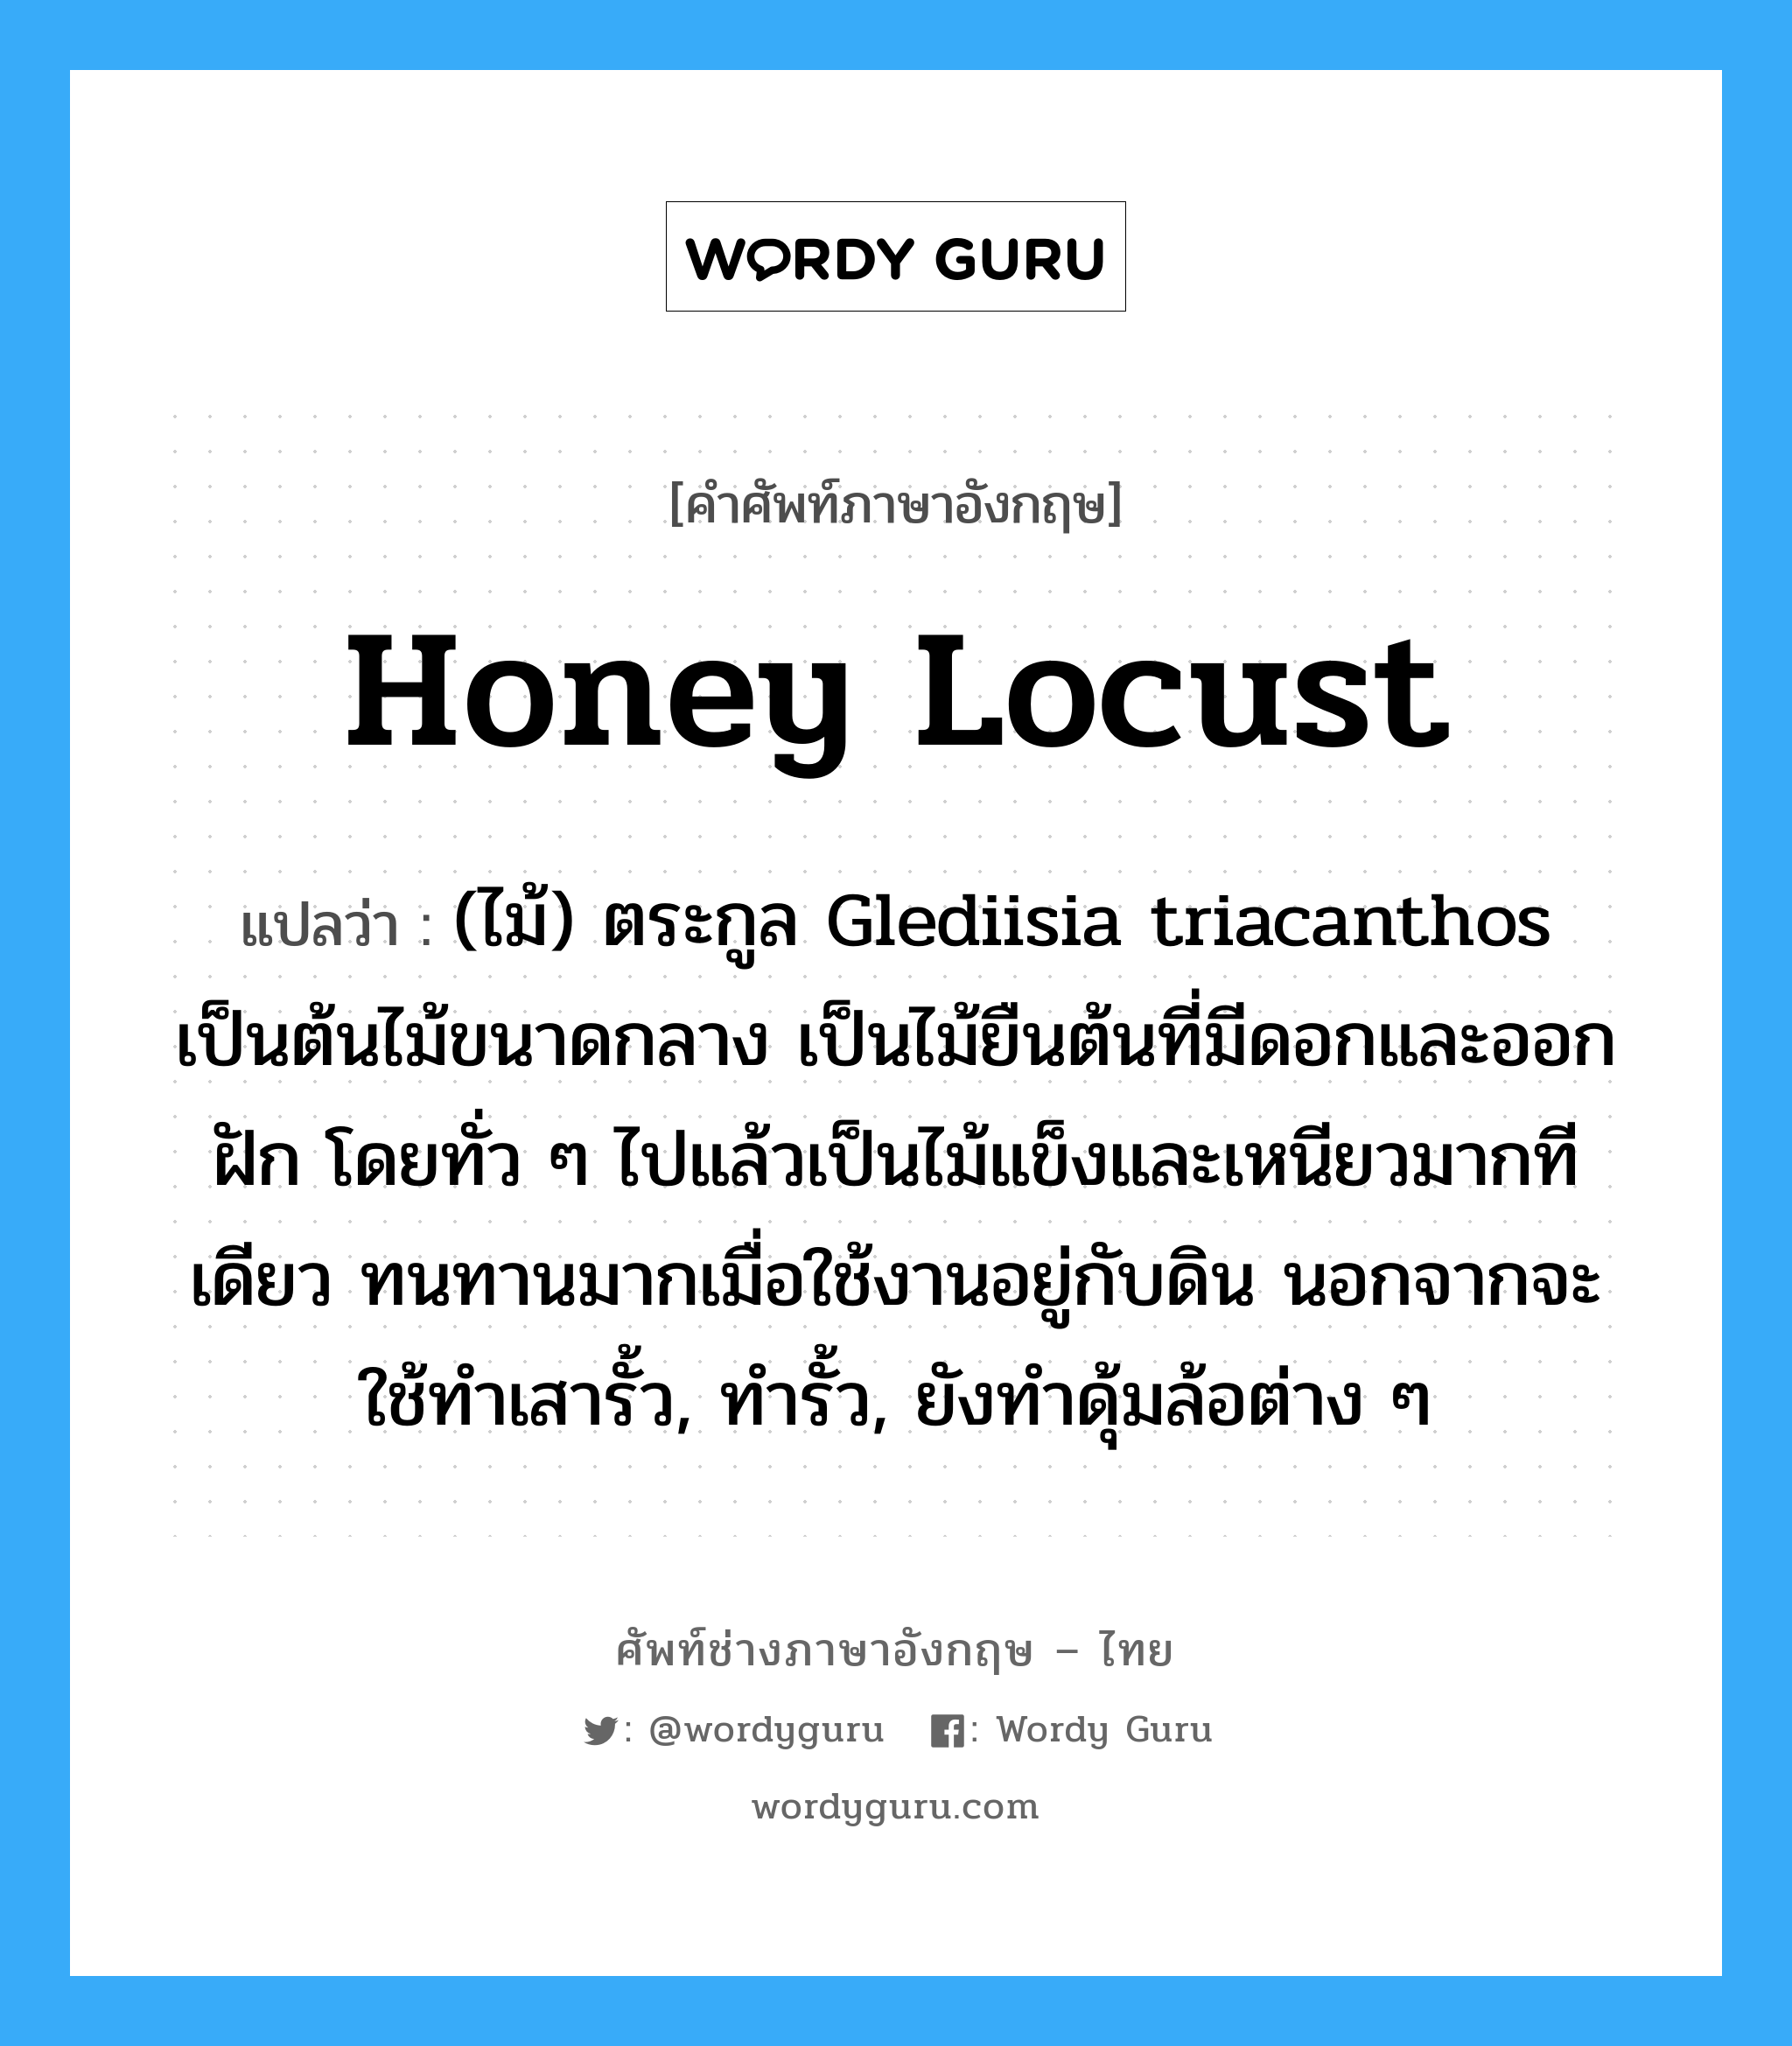 honey locust แปลว่า?, คำศัพท์ช่างภาษาอังกฤษ - ไทย honey locust คำศัพท์ภาษาอังกฤษ honey locust แปลว่า (ไม้) ตระกูล Glediisia triacanthos เป็นต้นไม้ขนาดกลาง เป็นไม้ยืนต้นที่มีดอกและออกฝัก โดยทั่ว ๆ ไปแล้วเป็นไม้แข็งและเหนียวมากทีเดียว ทนทานมากเมื่อใช้งานอยู่กับดิน นอกจากจะใช้ทำเสารั้ว, ทำรั้ว, ยังทำดุ้มล้อต่าง ๆ